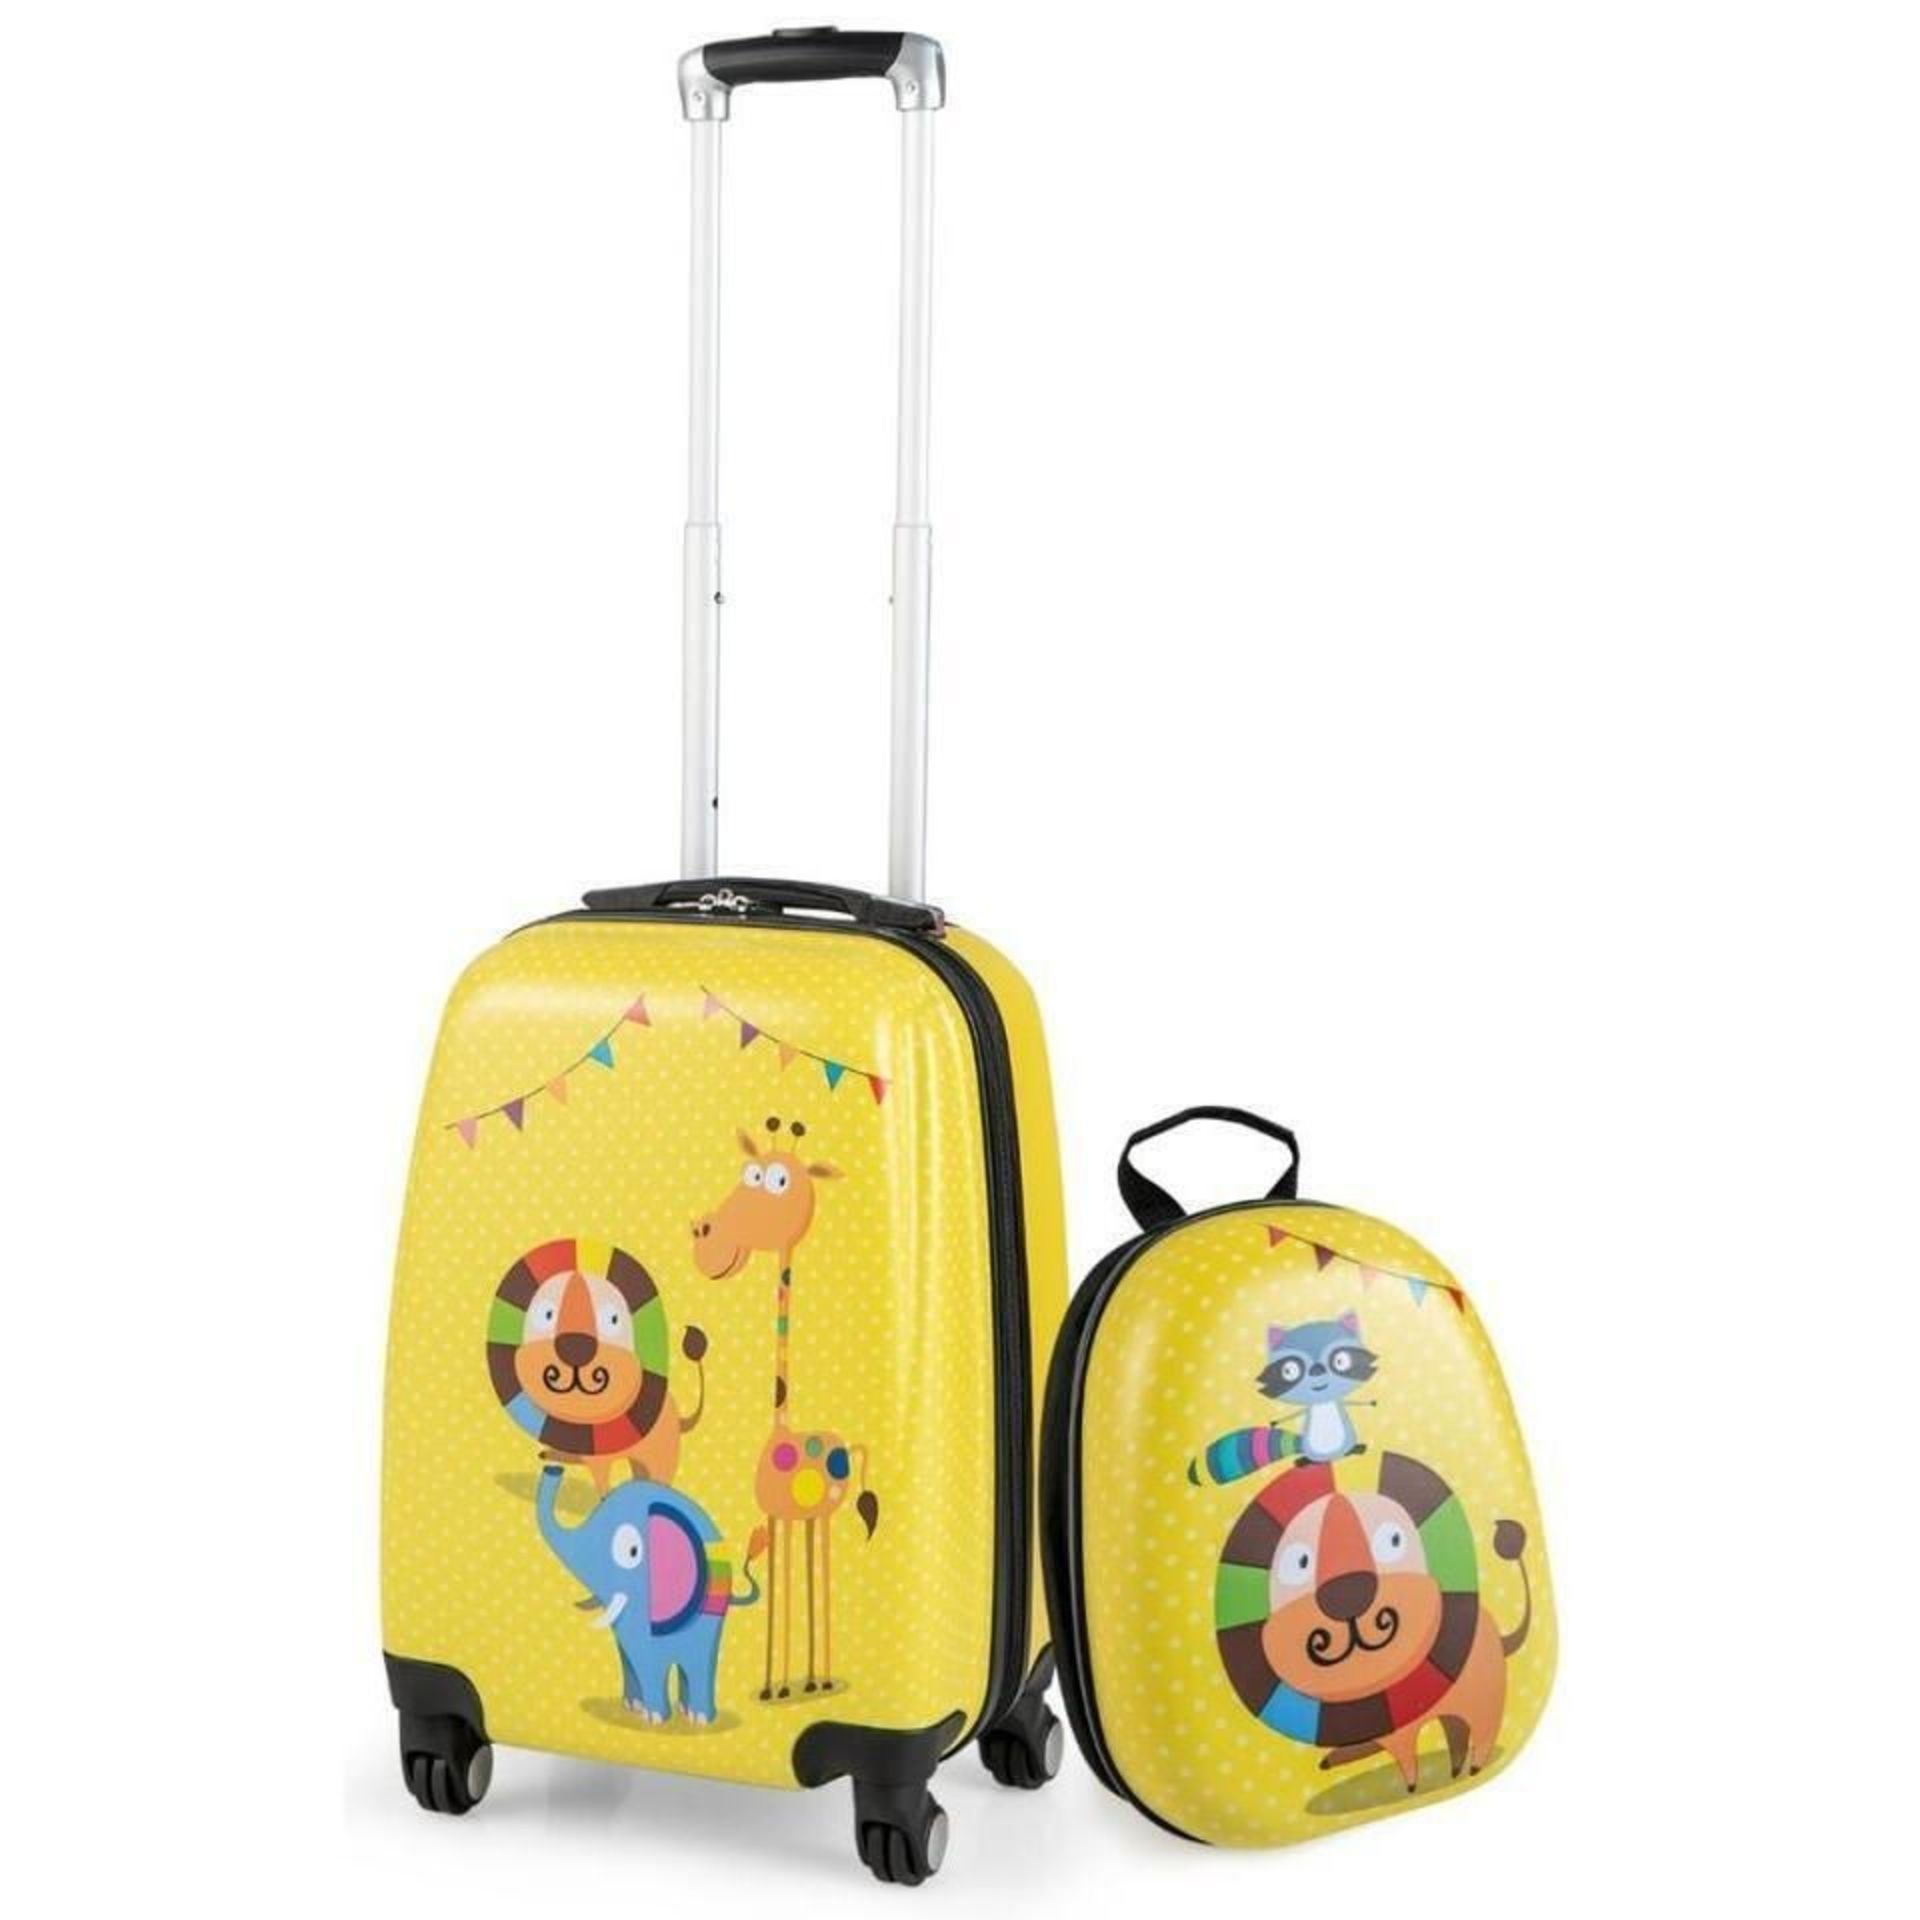 Kids suitcase and backpack set - ER53